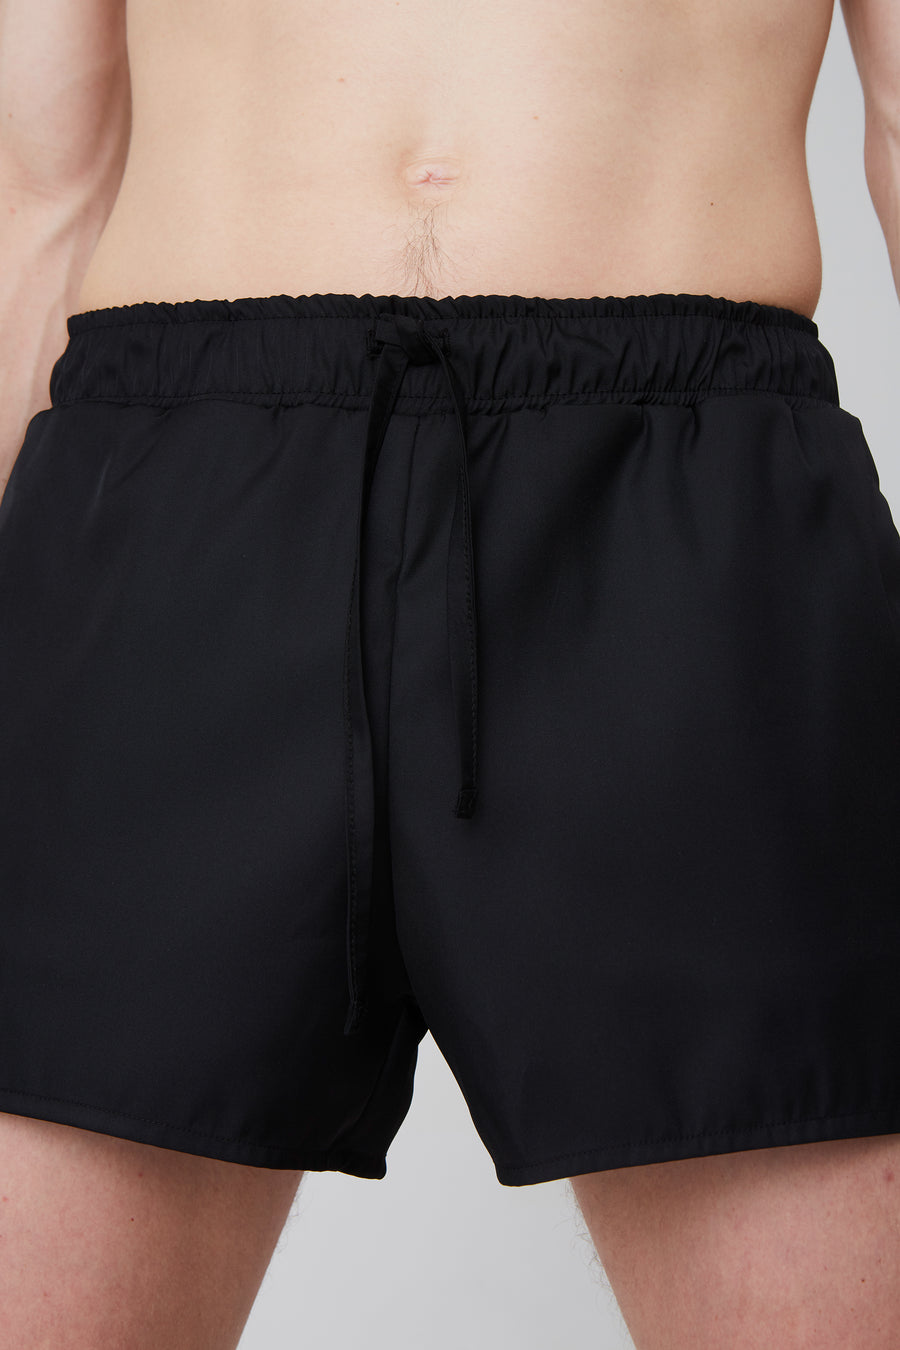 Shorts – boxer 1, black